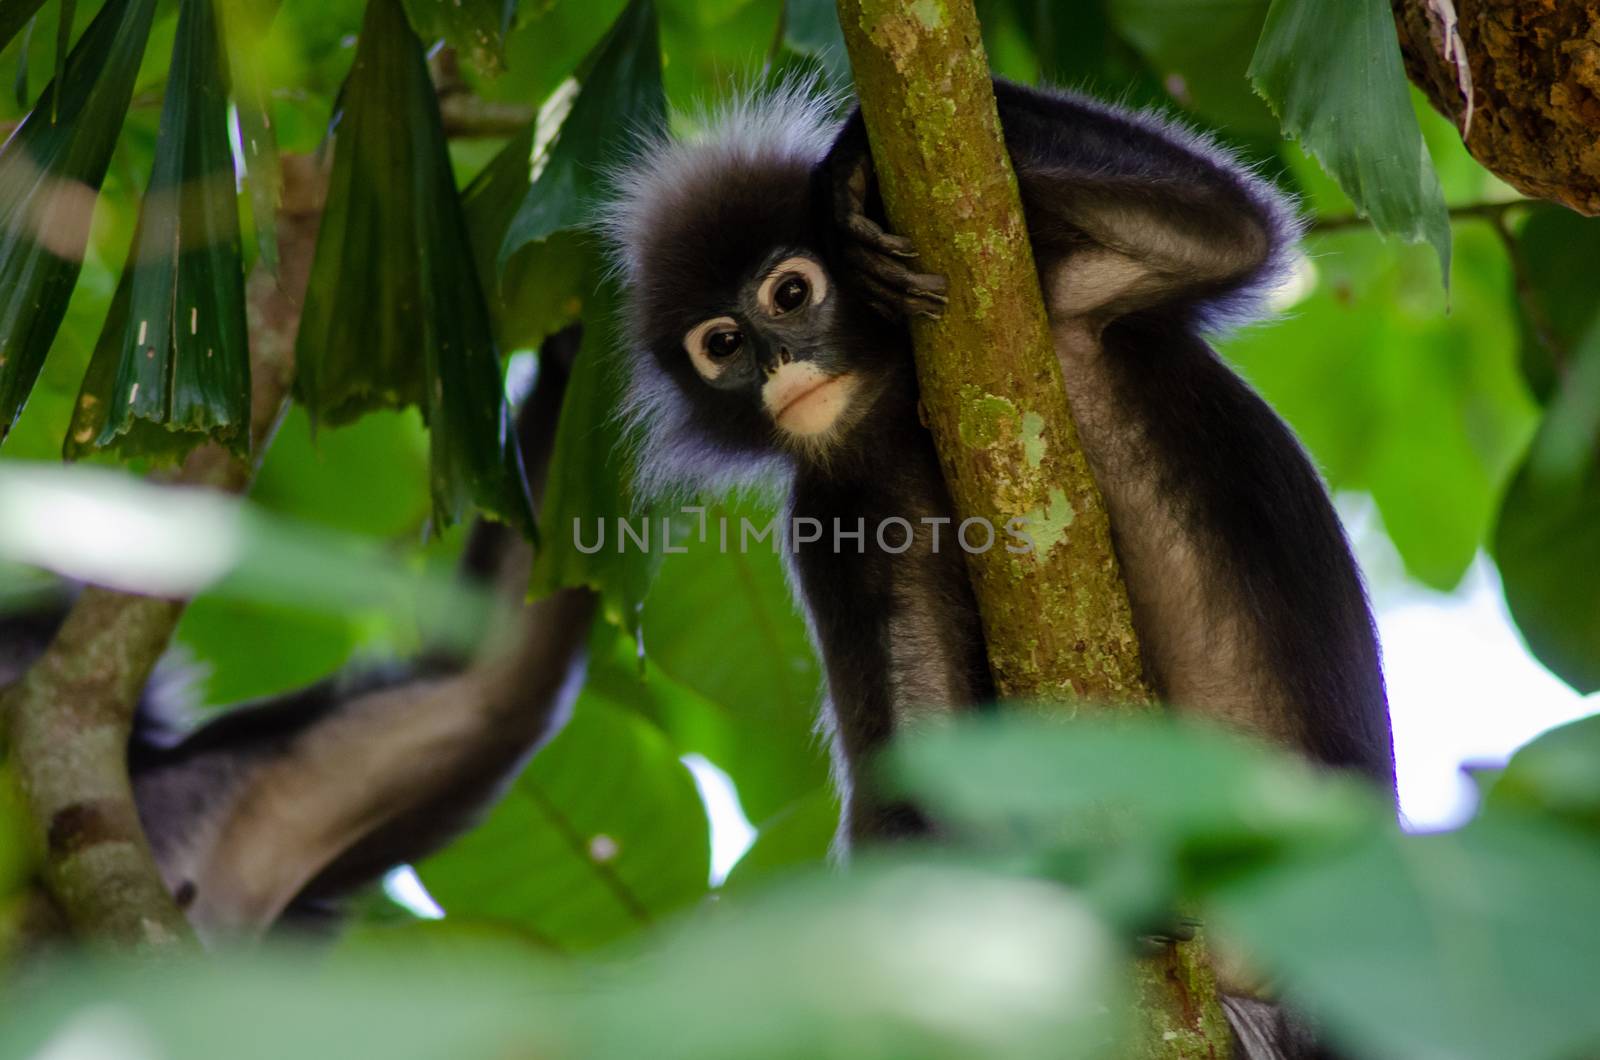 The dusky leaf monkey, langur at Penang forest.